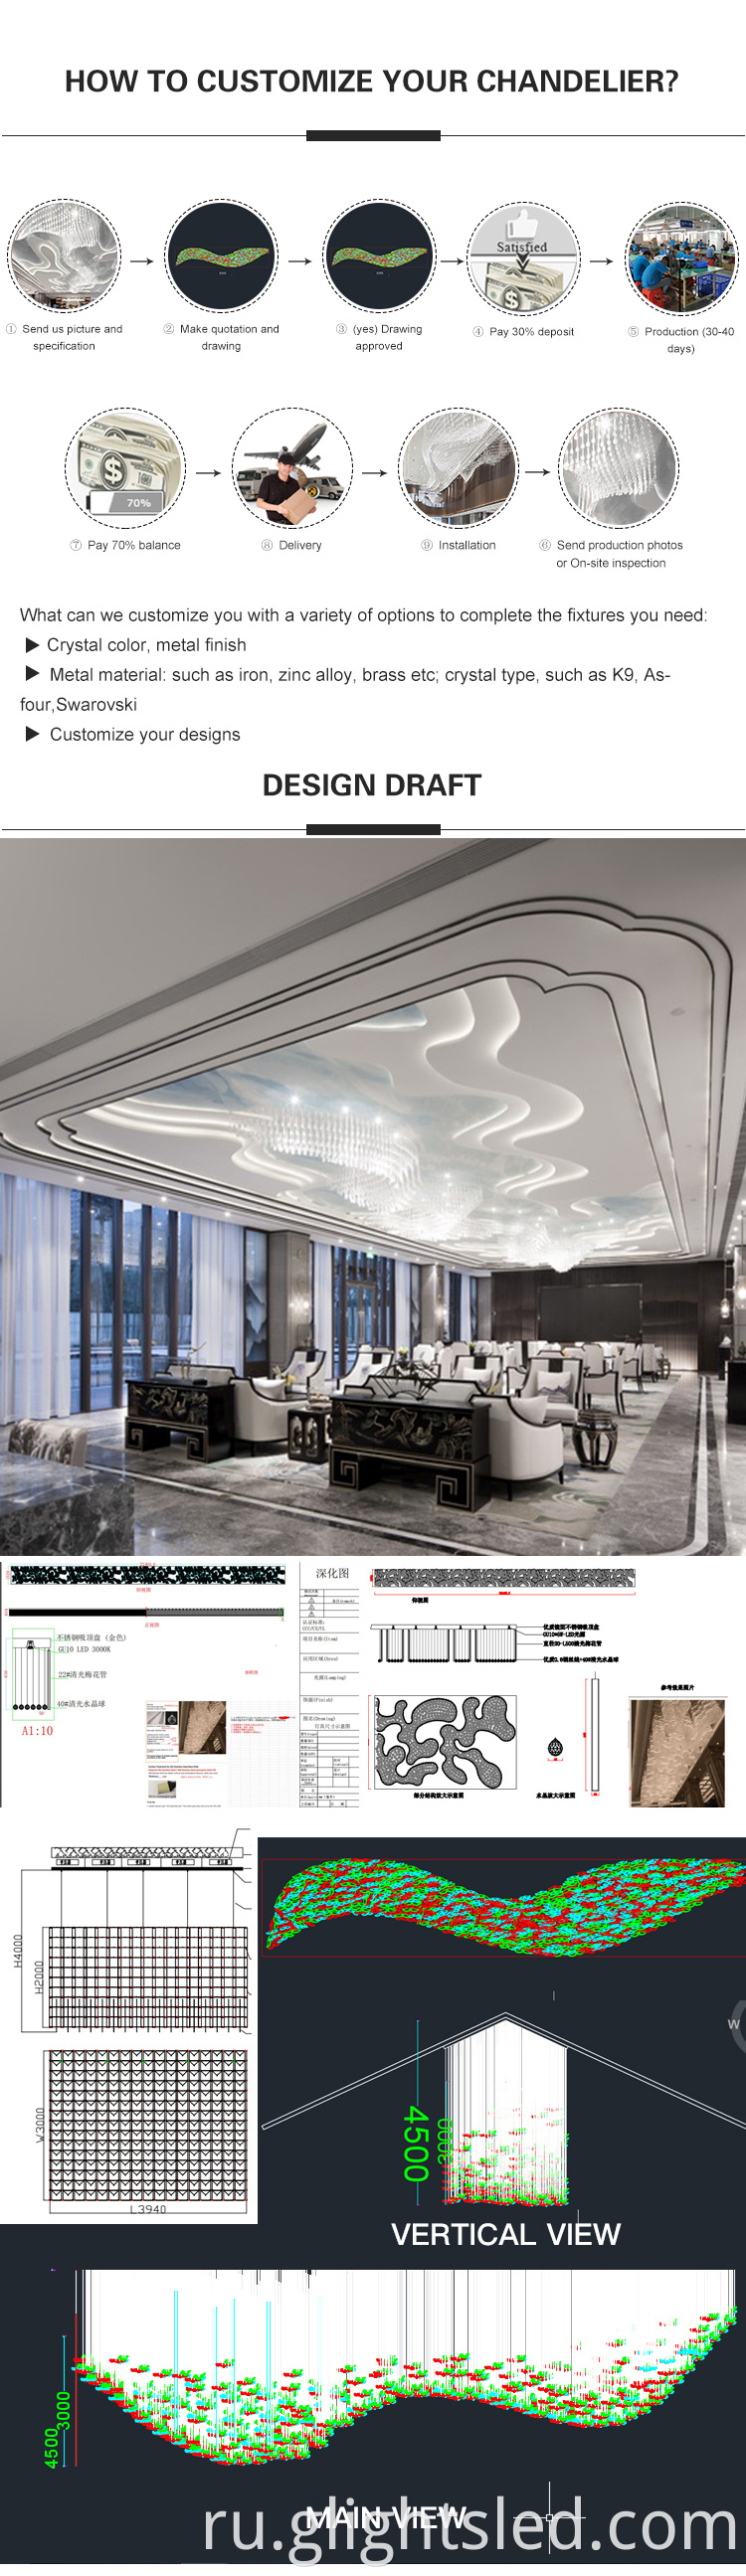 City Hotel Senior Luxury Cundoor украшение Crystal K9 Пользовательская люстра подвеска